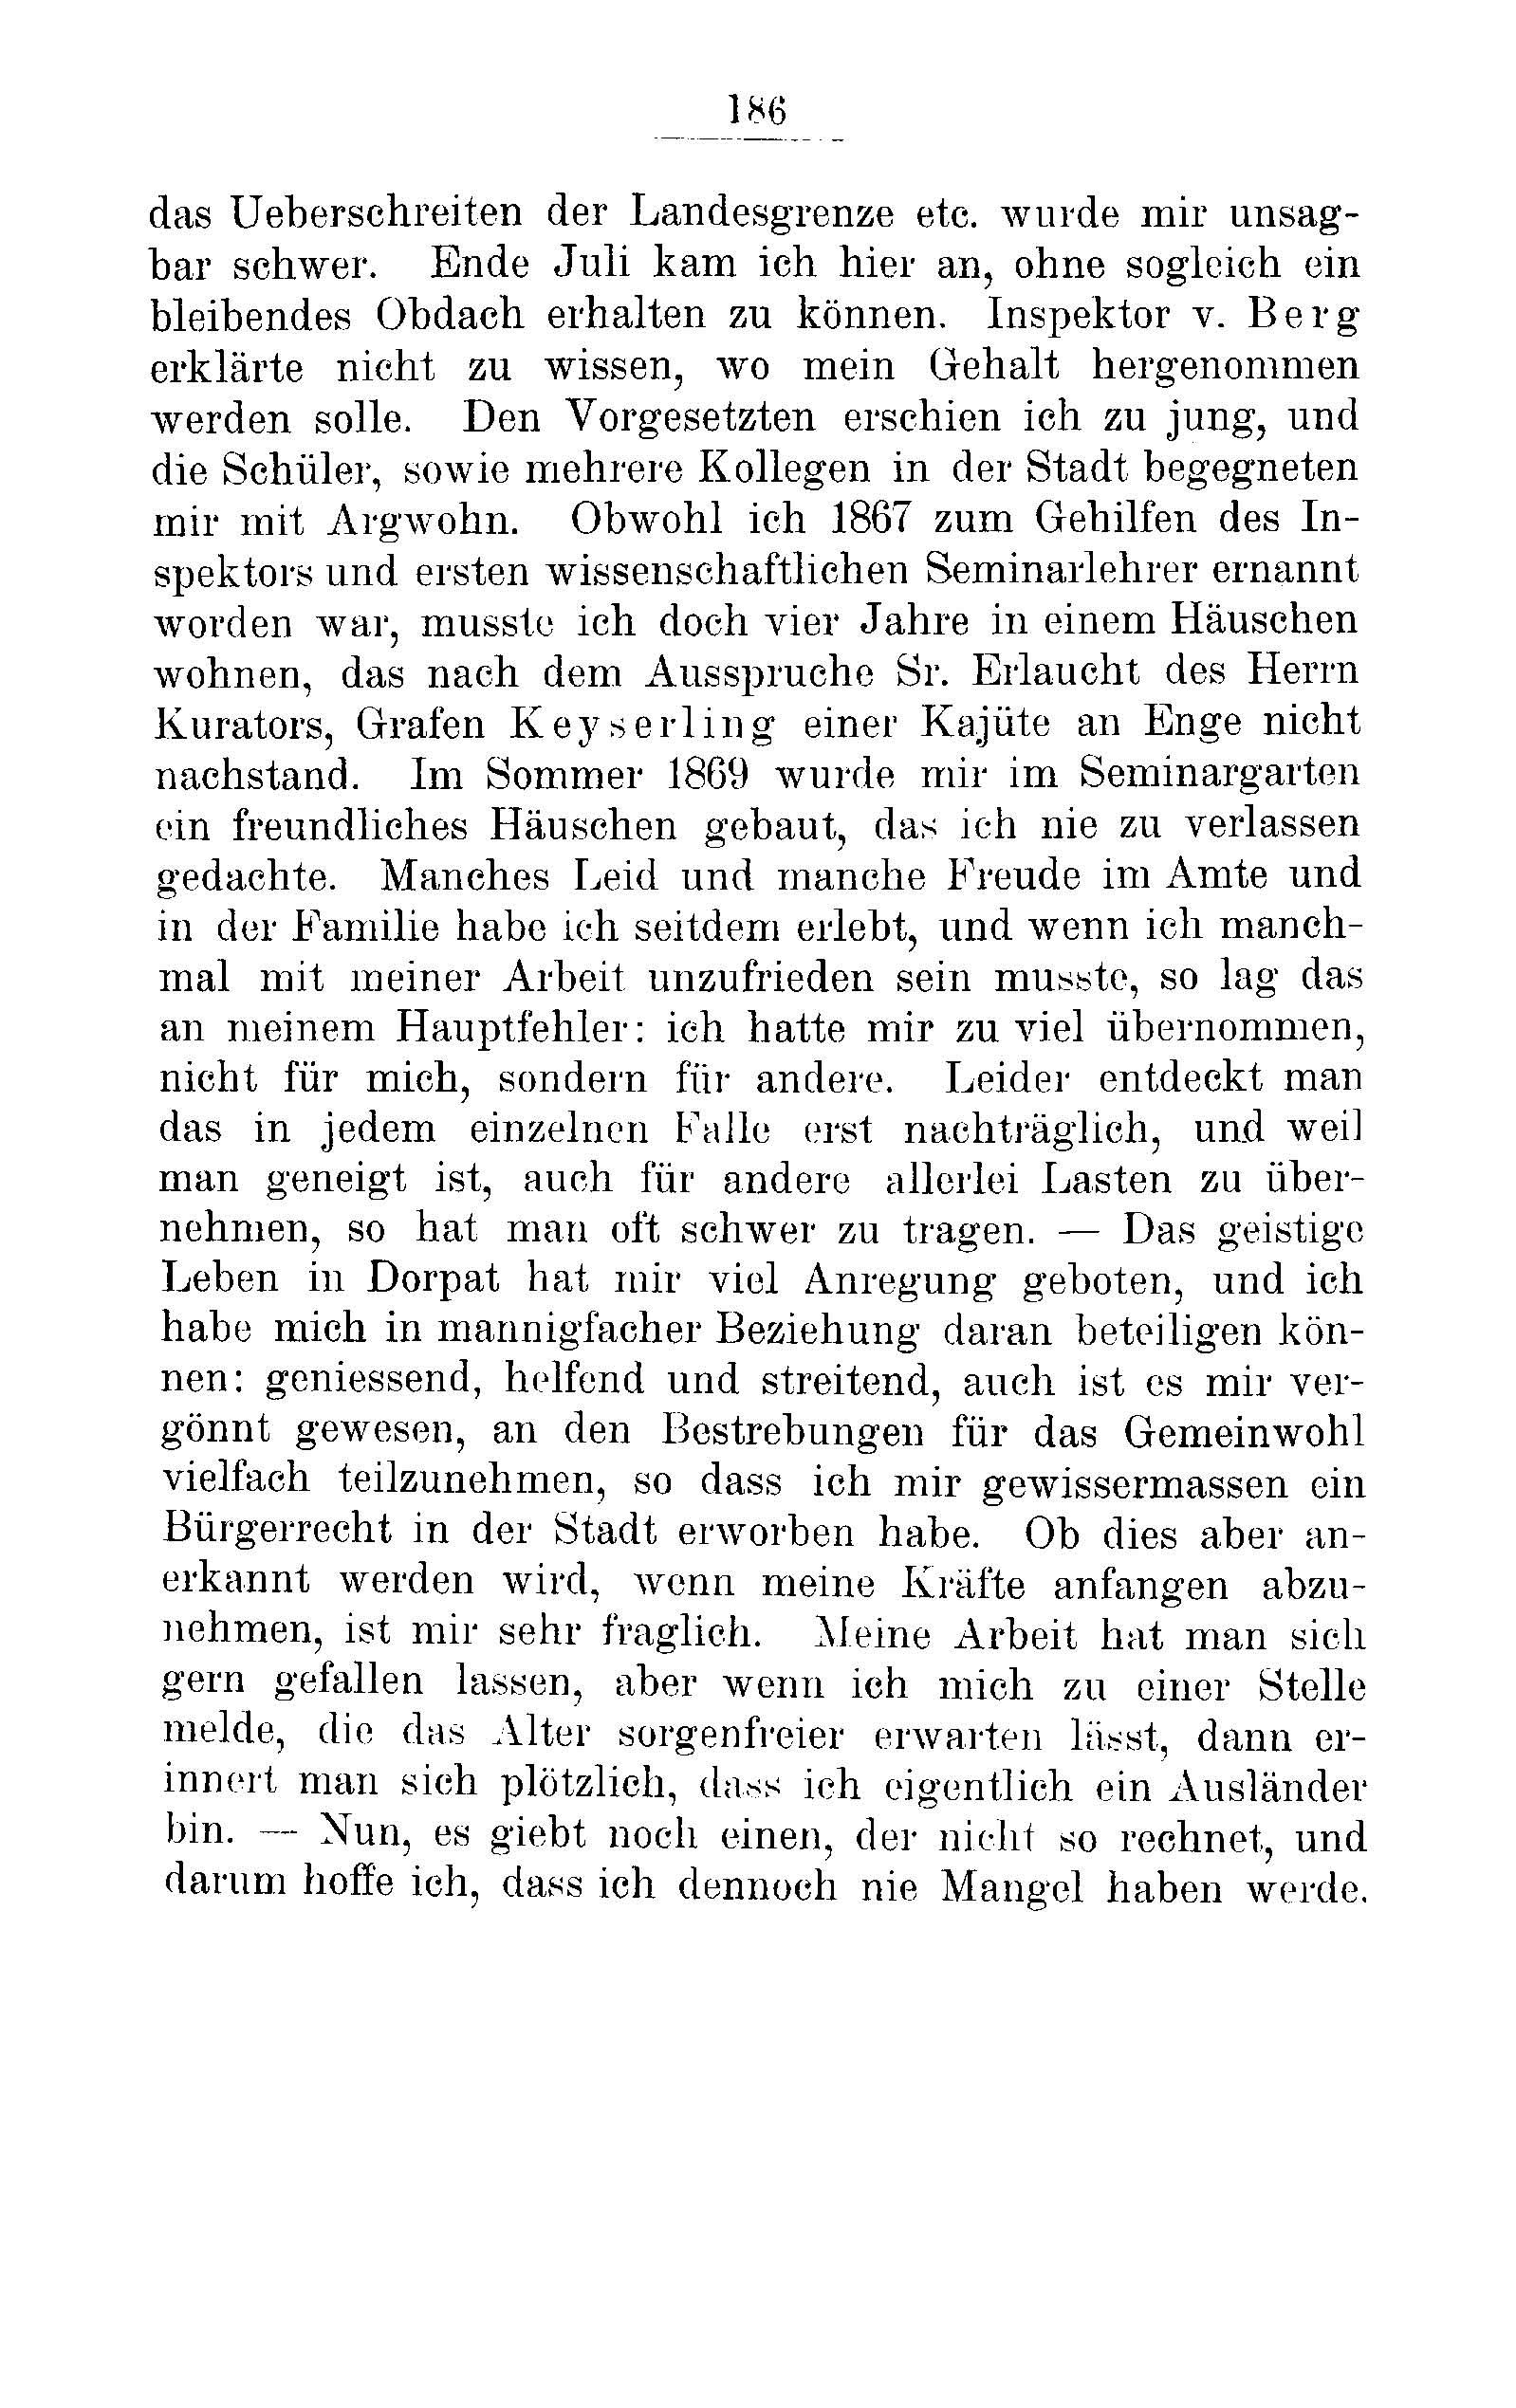 Das Erste Dorpatsche Lehrer-Seminar (1890) | 191. Haupttext